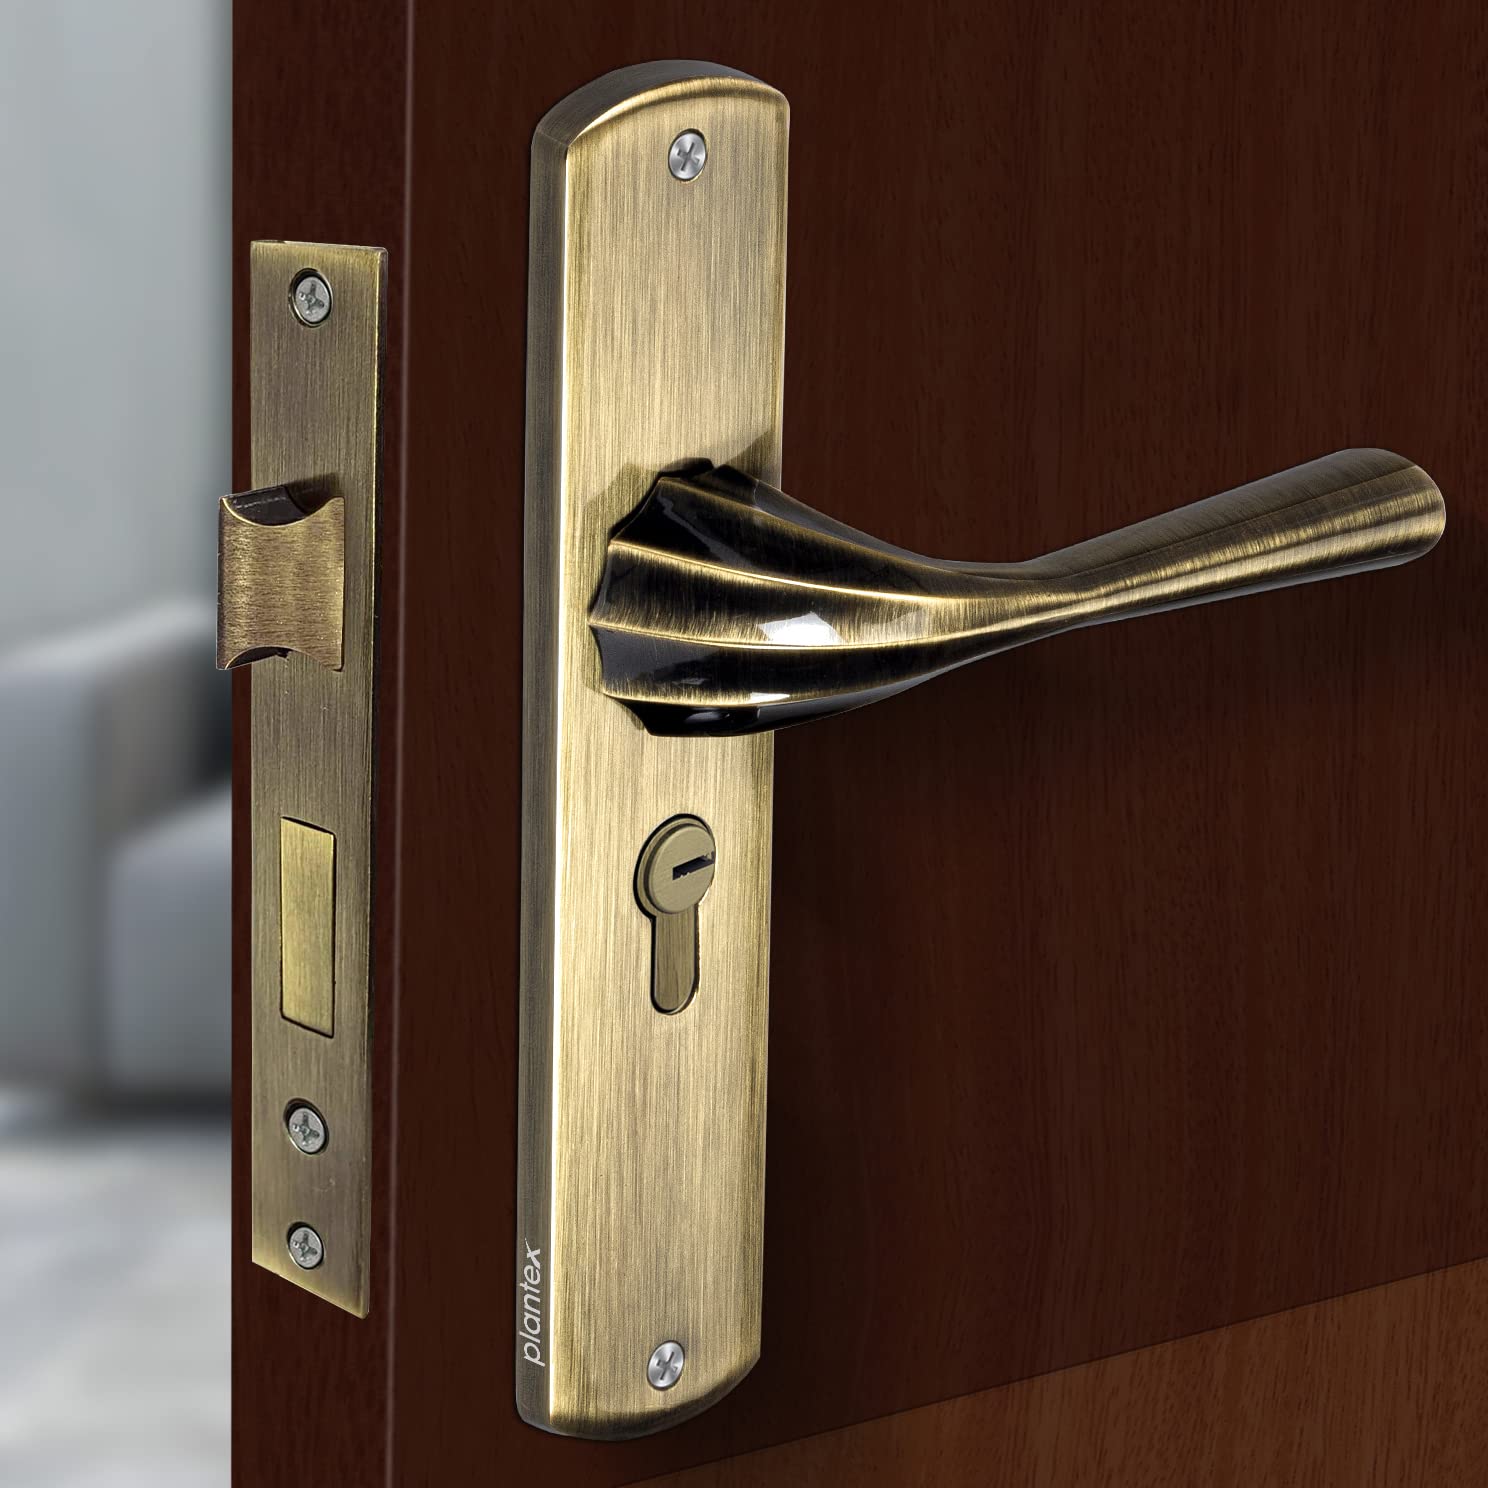 Plantex Premium Heavy Duty Mortise Door Lock with Door Handle Lock Set Body for Home Main Door with Pull/Push Handle for Bedroom/ Office/ Hotel/ Bathroom with 3 Keys (Brass Antique)